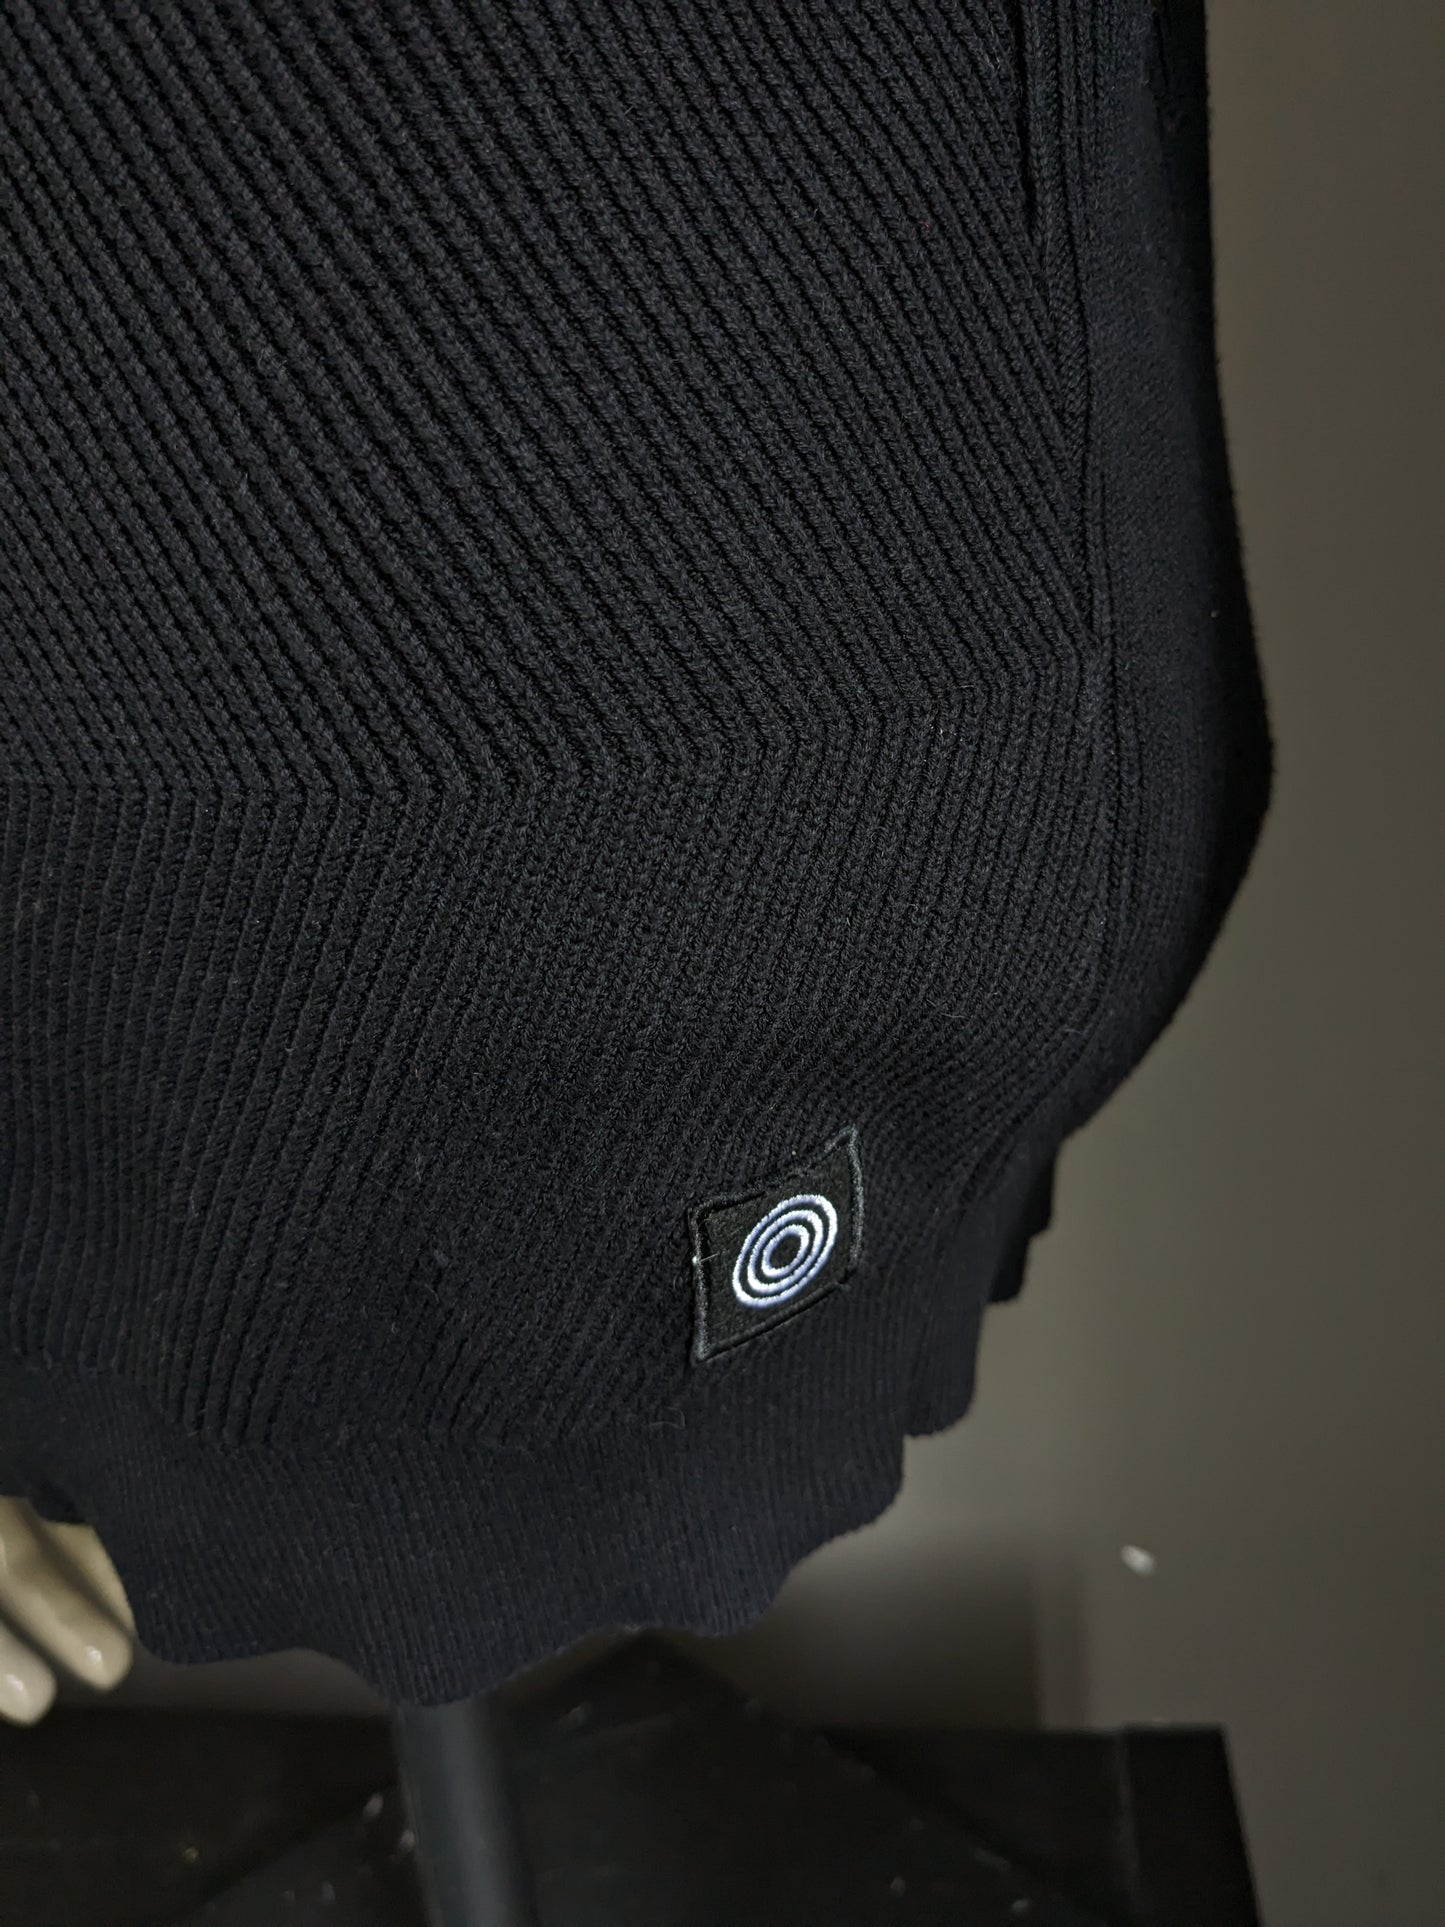 Suéter de la industria azul con collar deportivo. Motivo de costilla negra. Talla M.